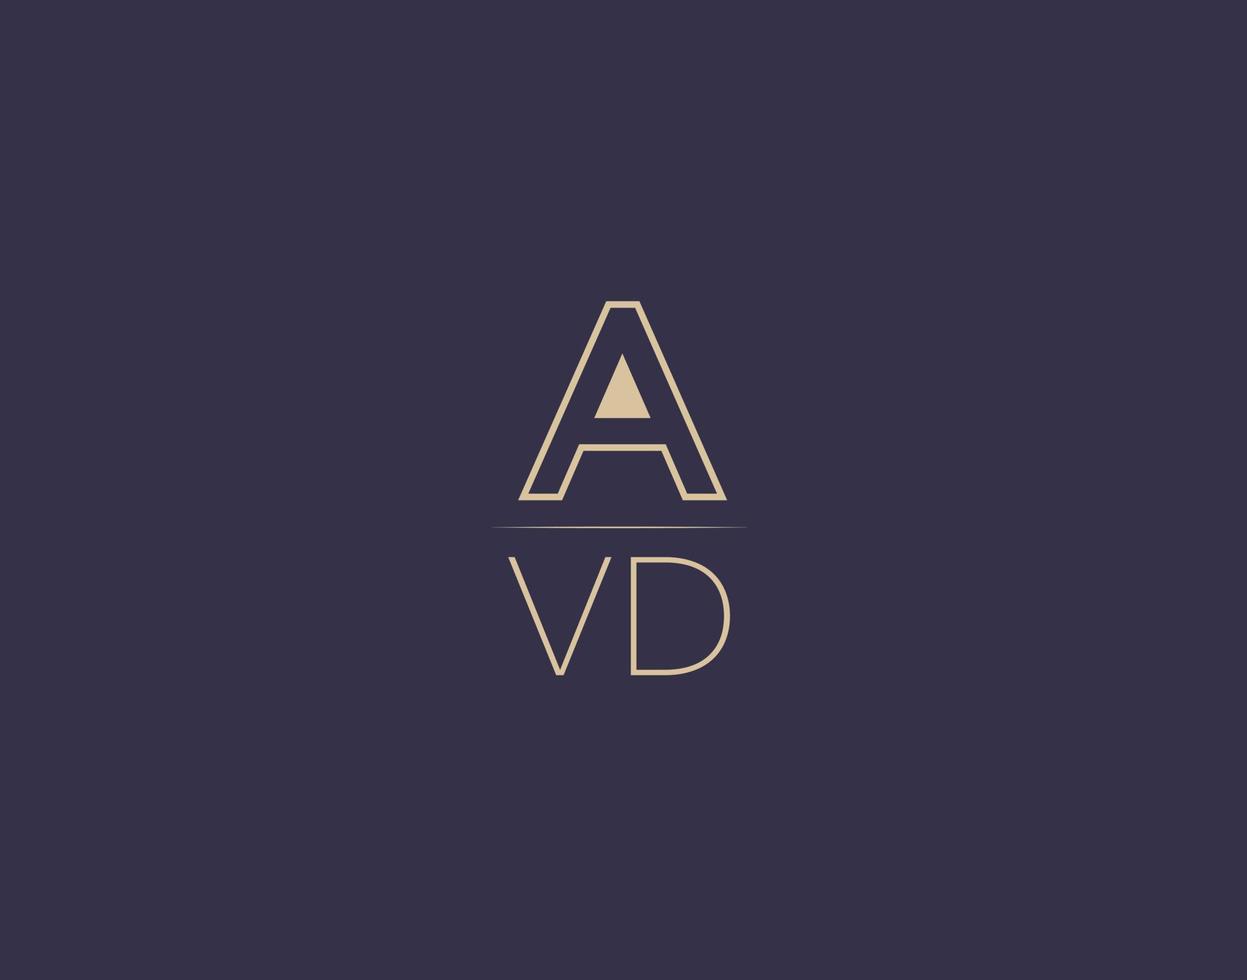 imágenes vectoriales minimalistas modernas de diseño de logotipo de letra avd vector